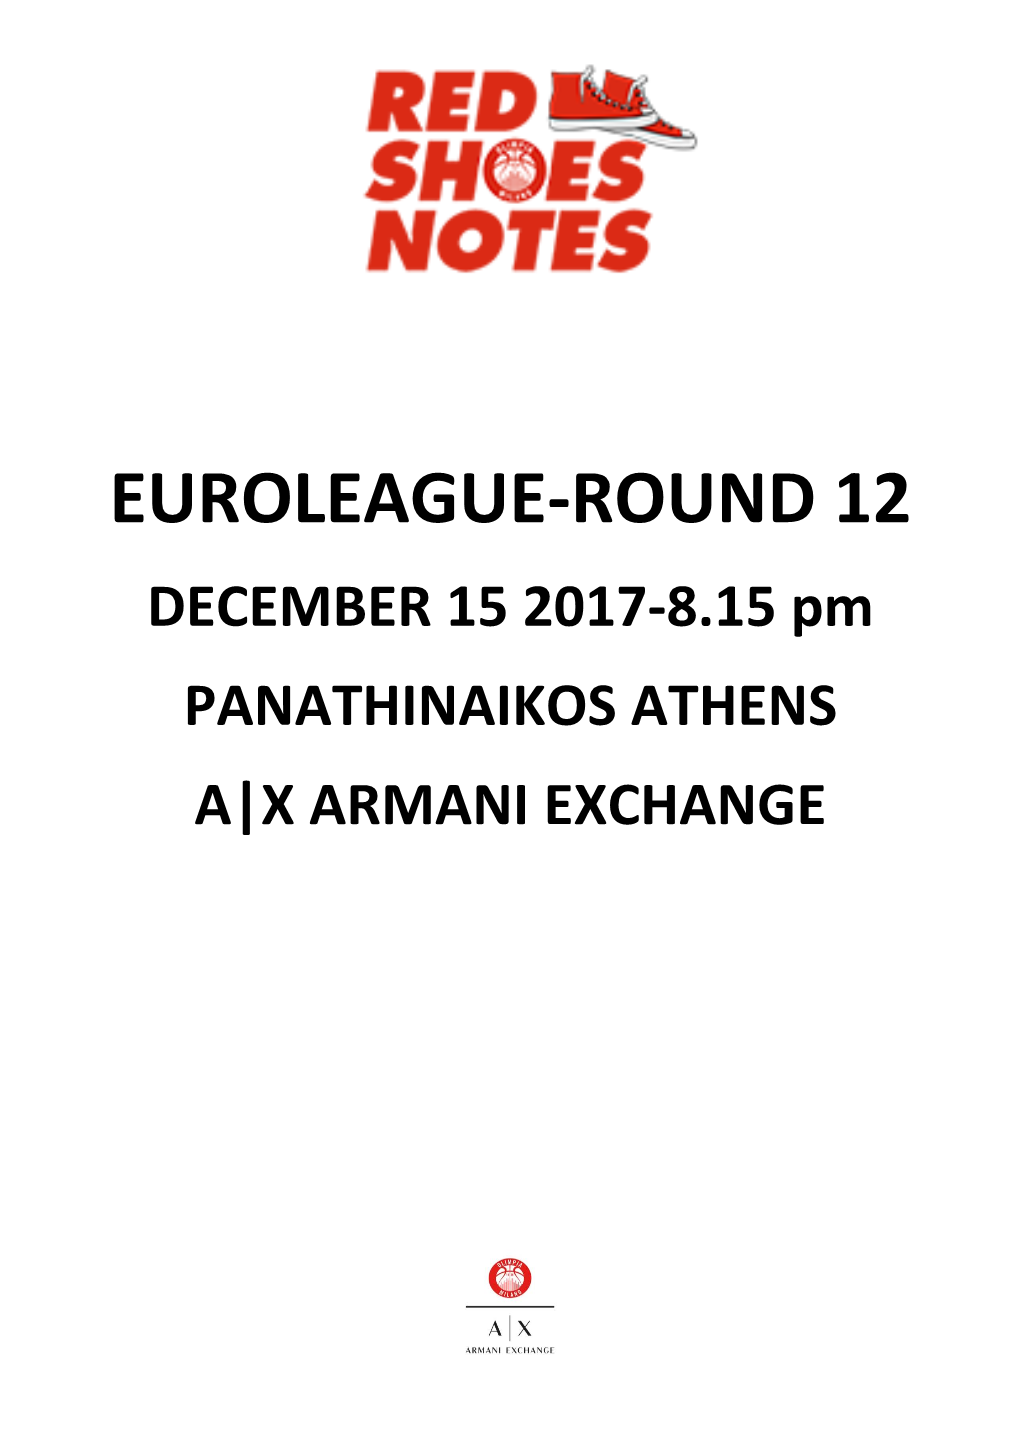 EUROLEAGUE-ROUND 12 DECEMBER 15 2017-8.15 Pm PANATHINAIKOS ATHENS A|X ARMANI EXCHANGE